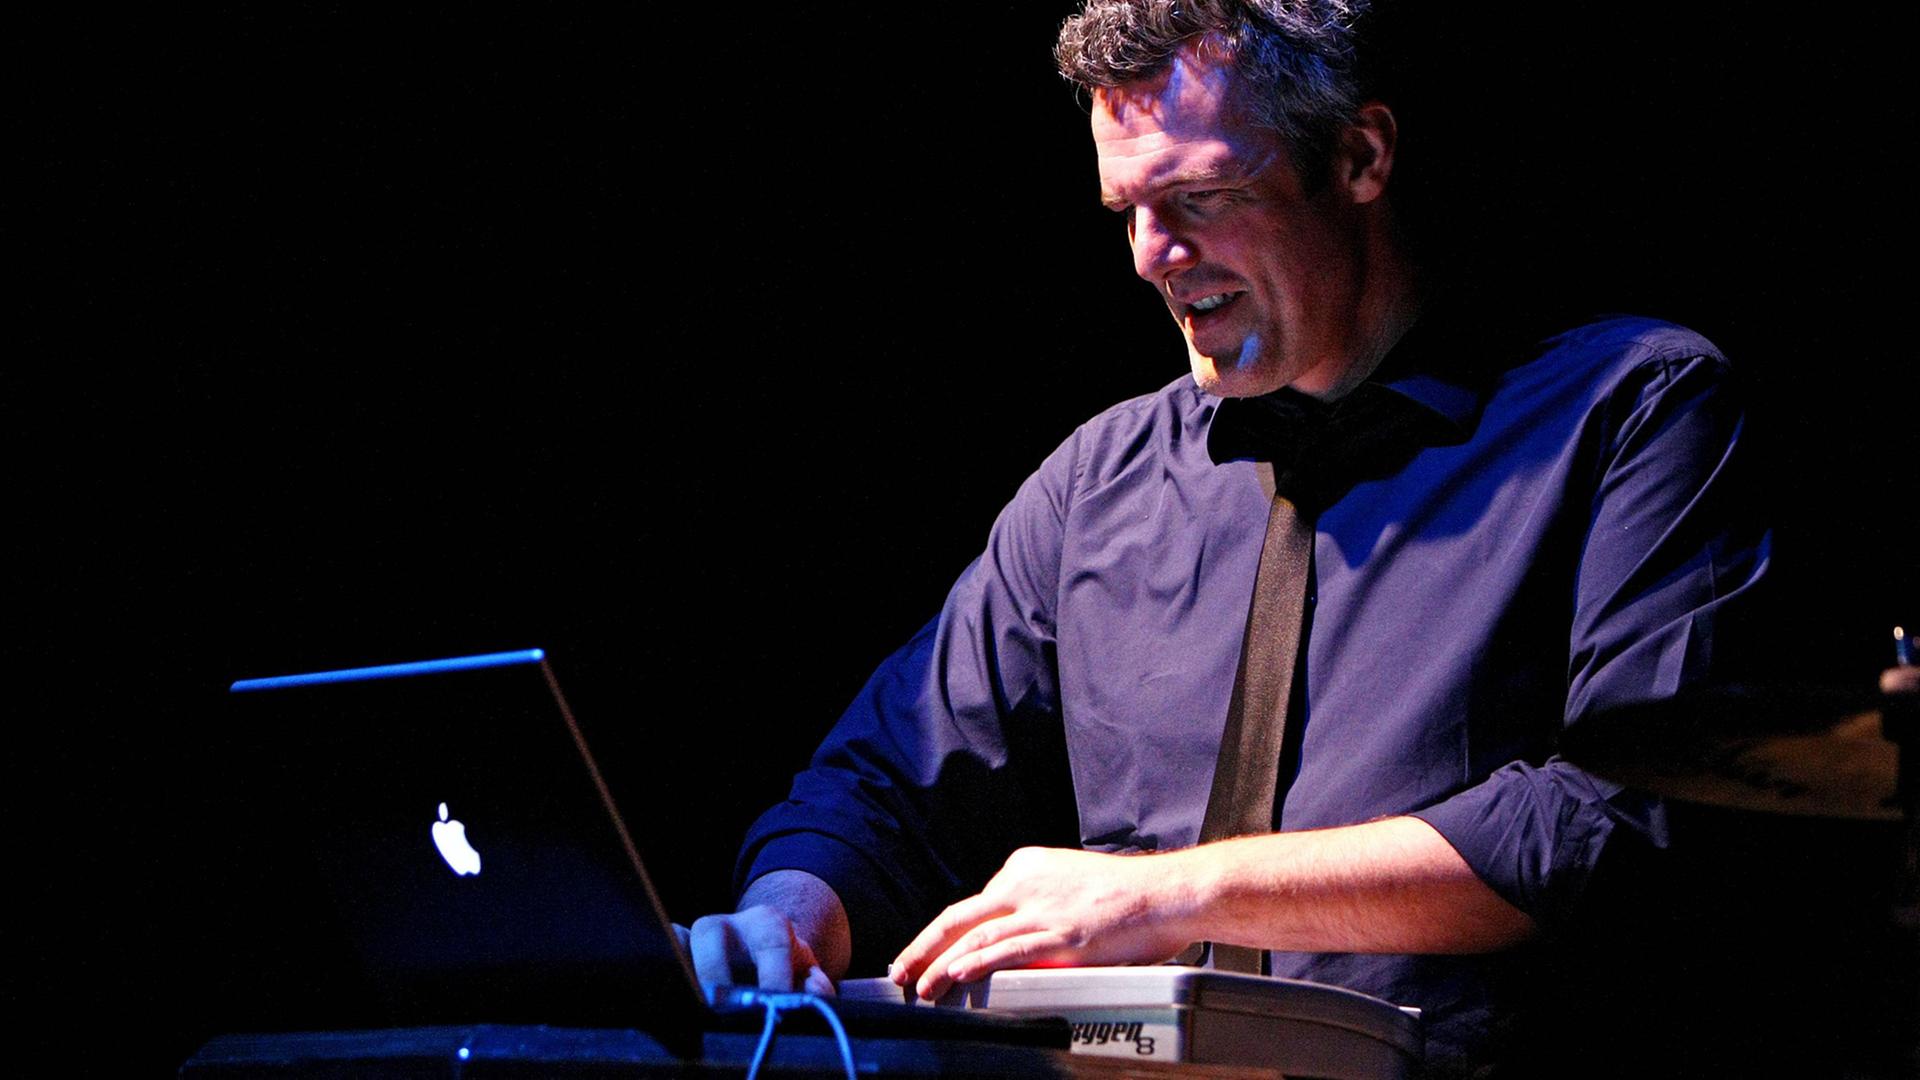 Percussionist Christian Prommer während eines Konzerts am 03.02.2009 in Leipzig